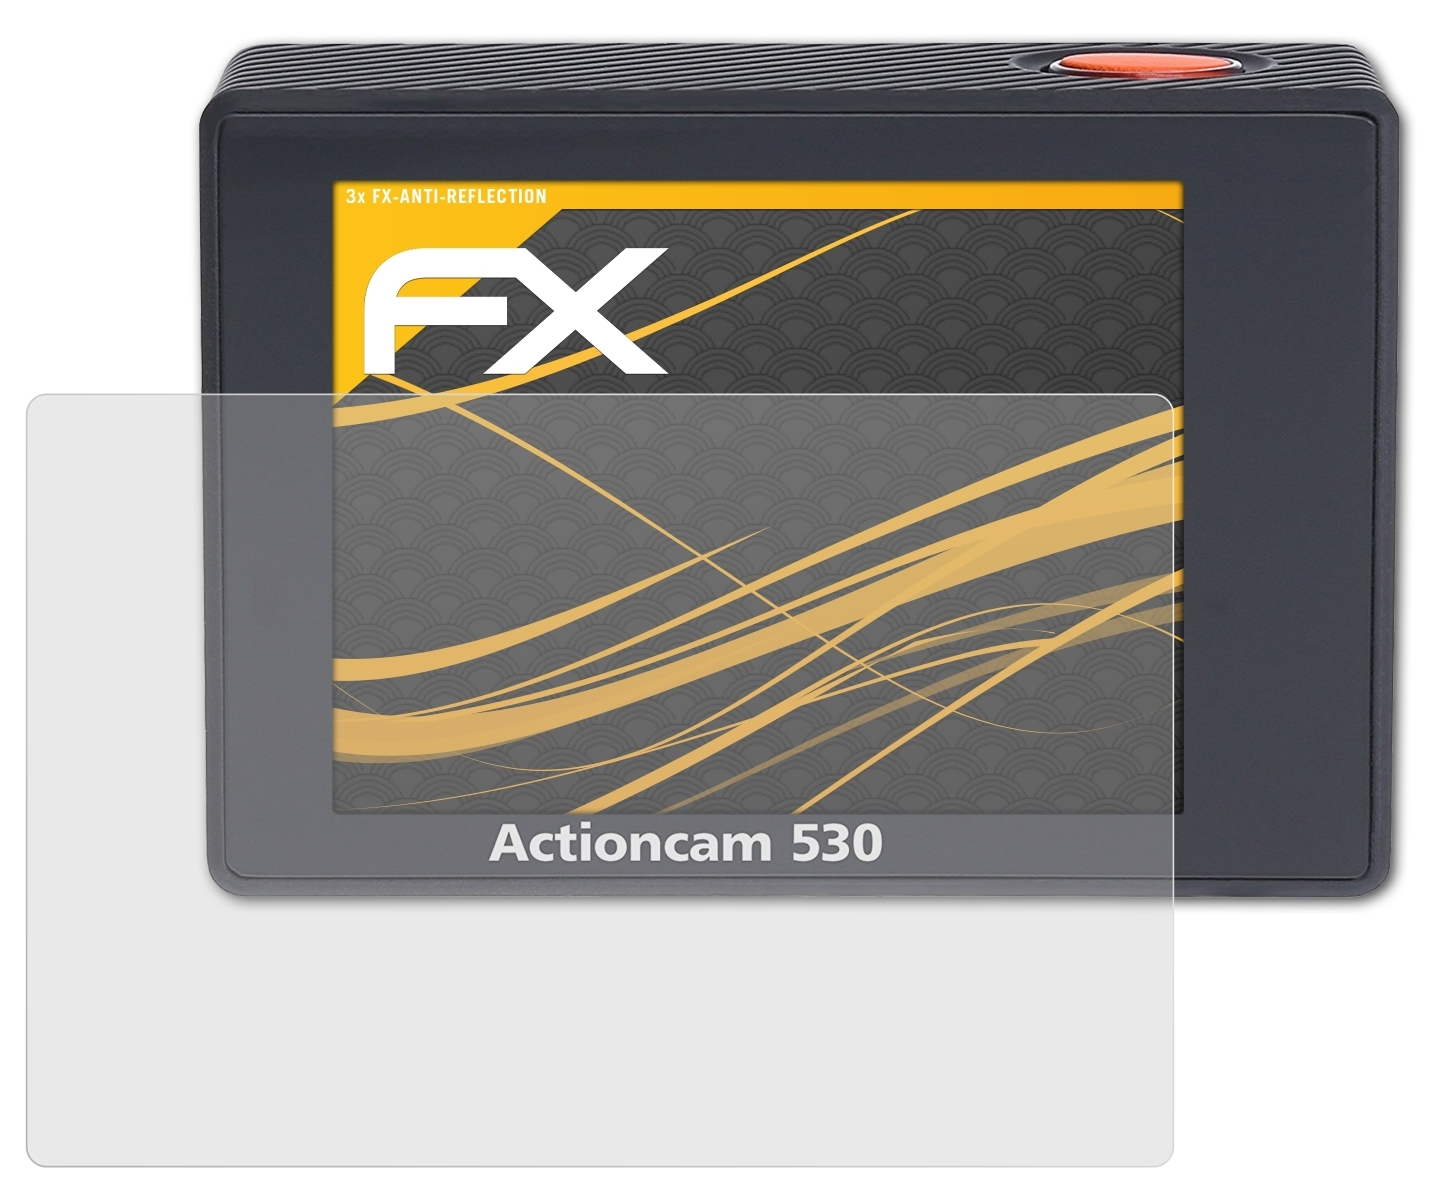 Actioncam Displayschutz(für 530) 3x FX-Antireflex ATFOLIX Rollei